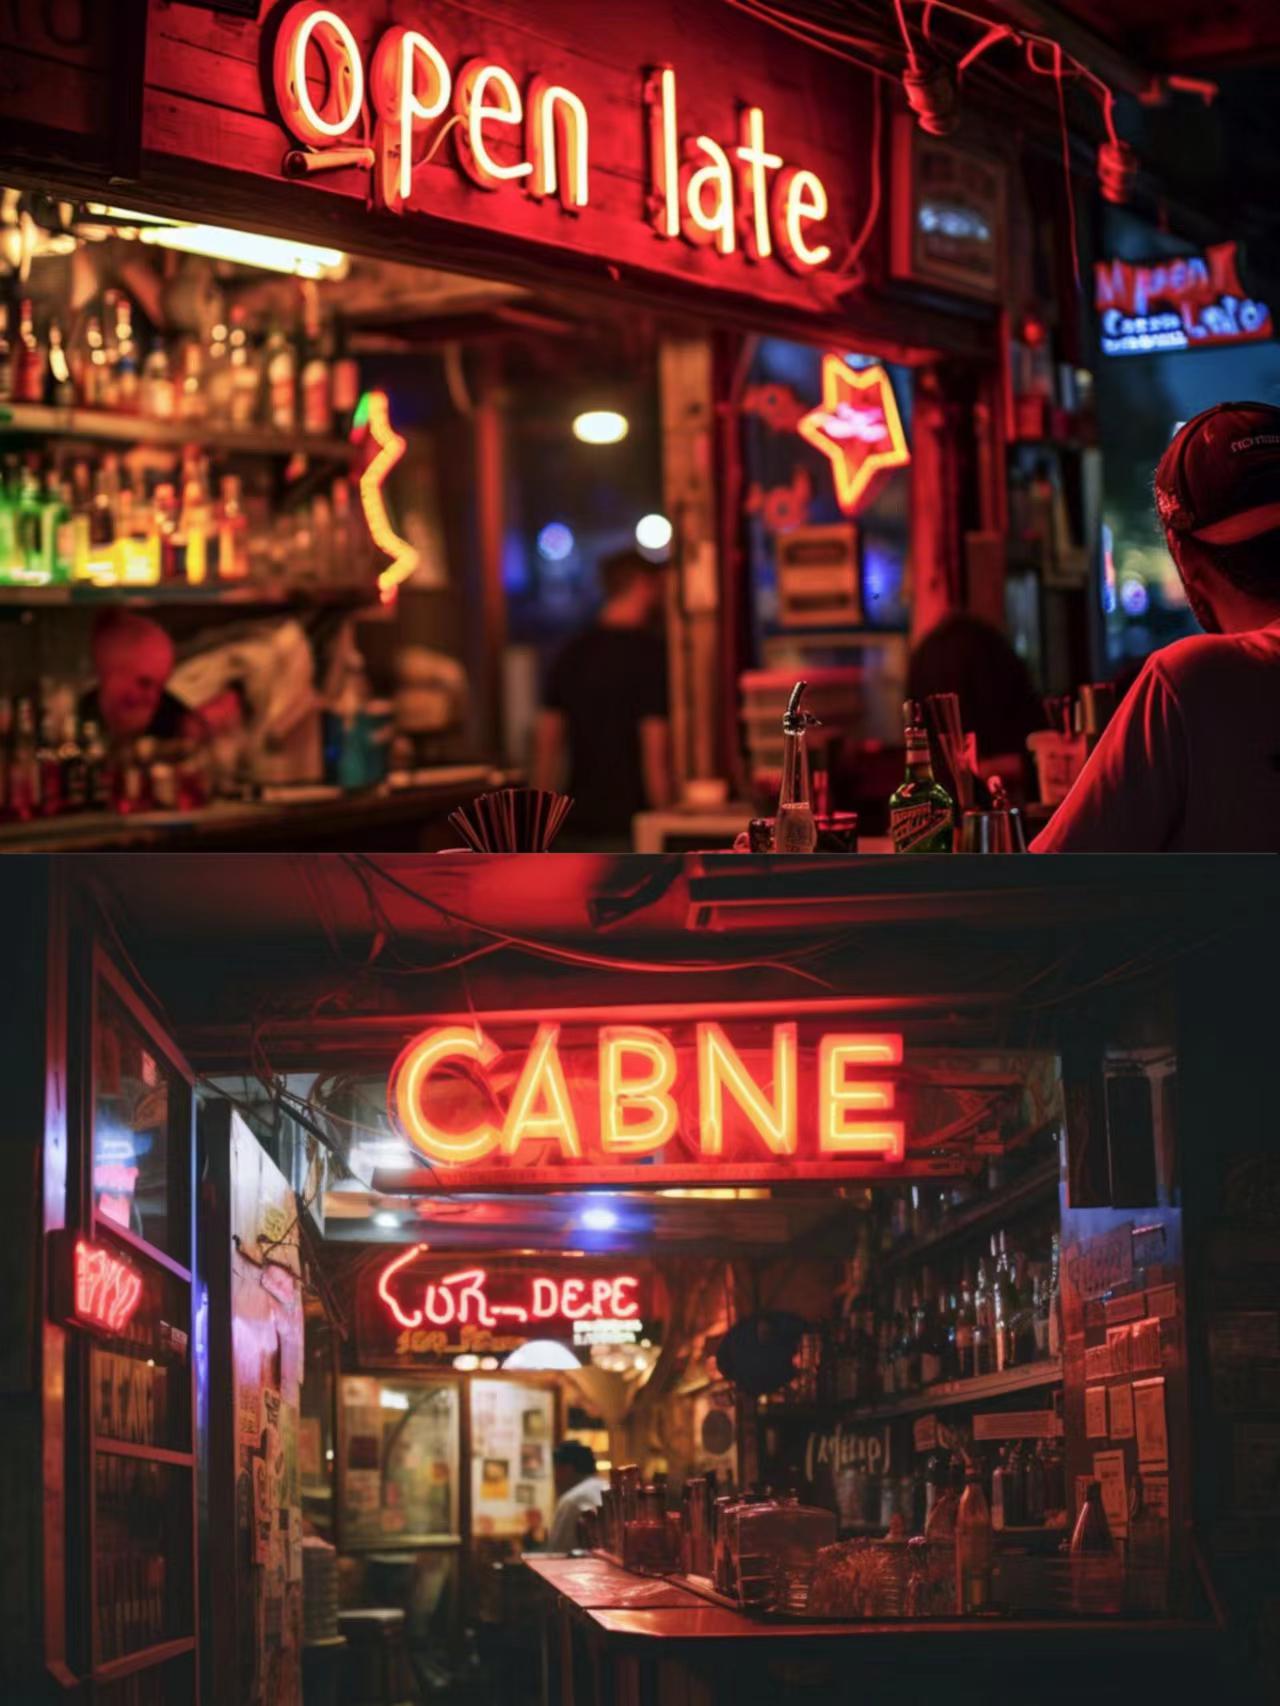 主要提示词：街角酒吧的霓虹灯上写着“营业至深夜”